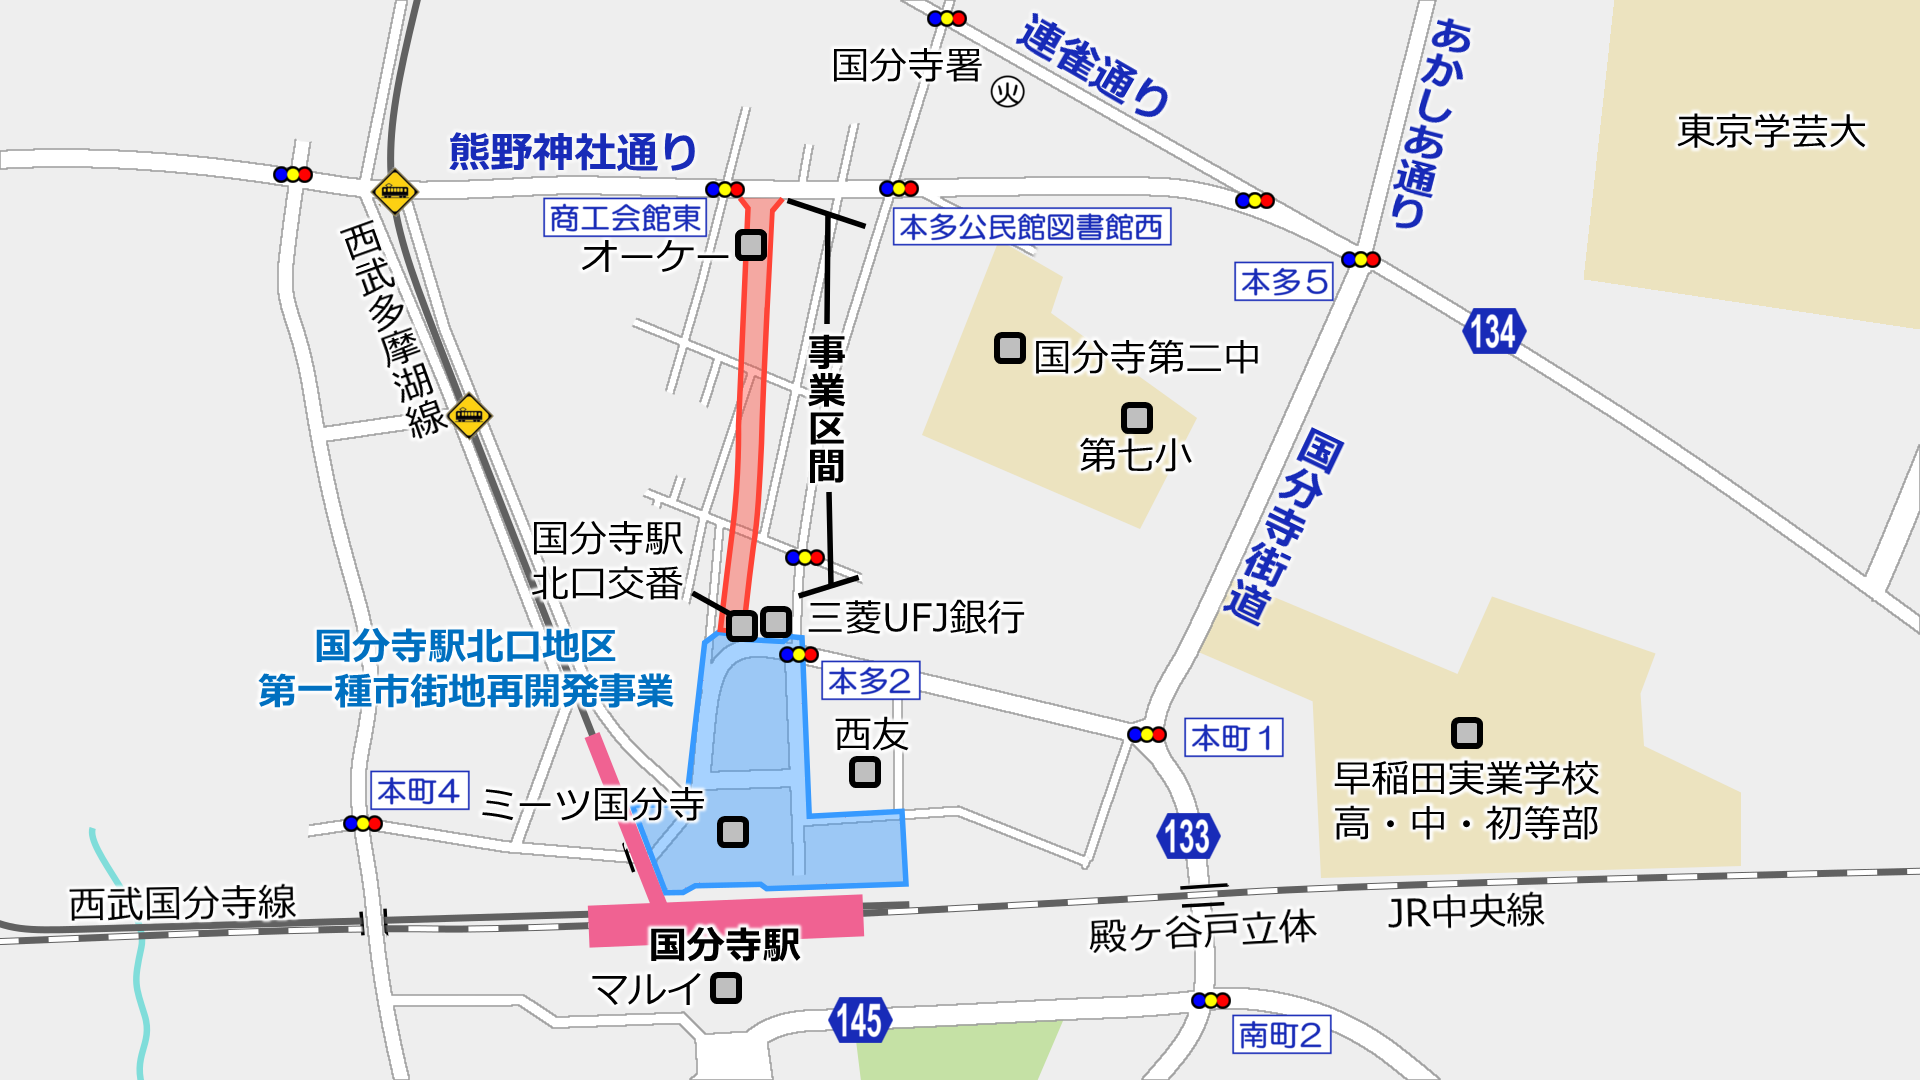 国分寺駅北口へのアクセス路「国分寺3・4・12号線」進捗状況2018春